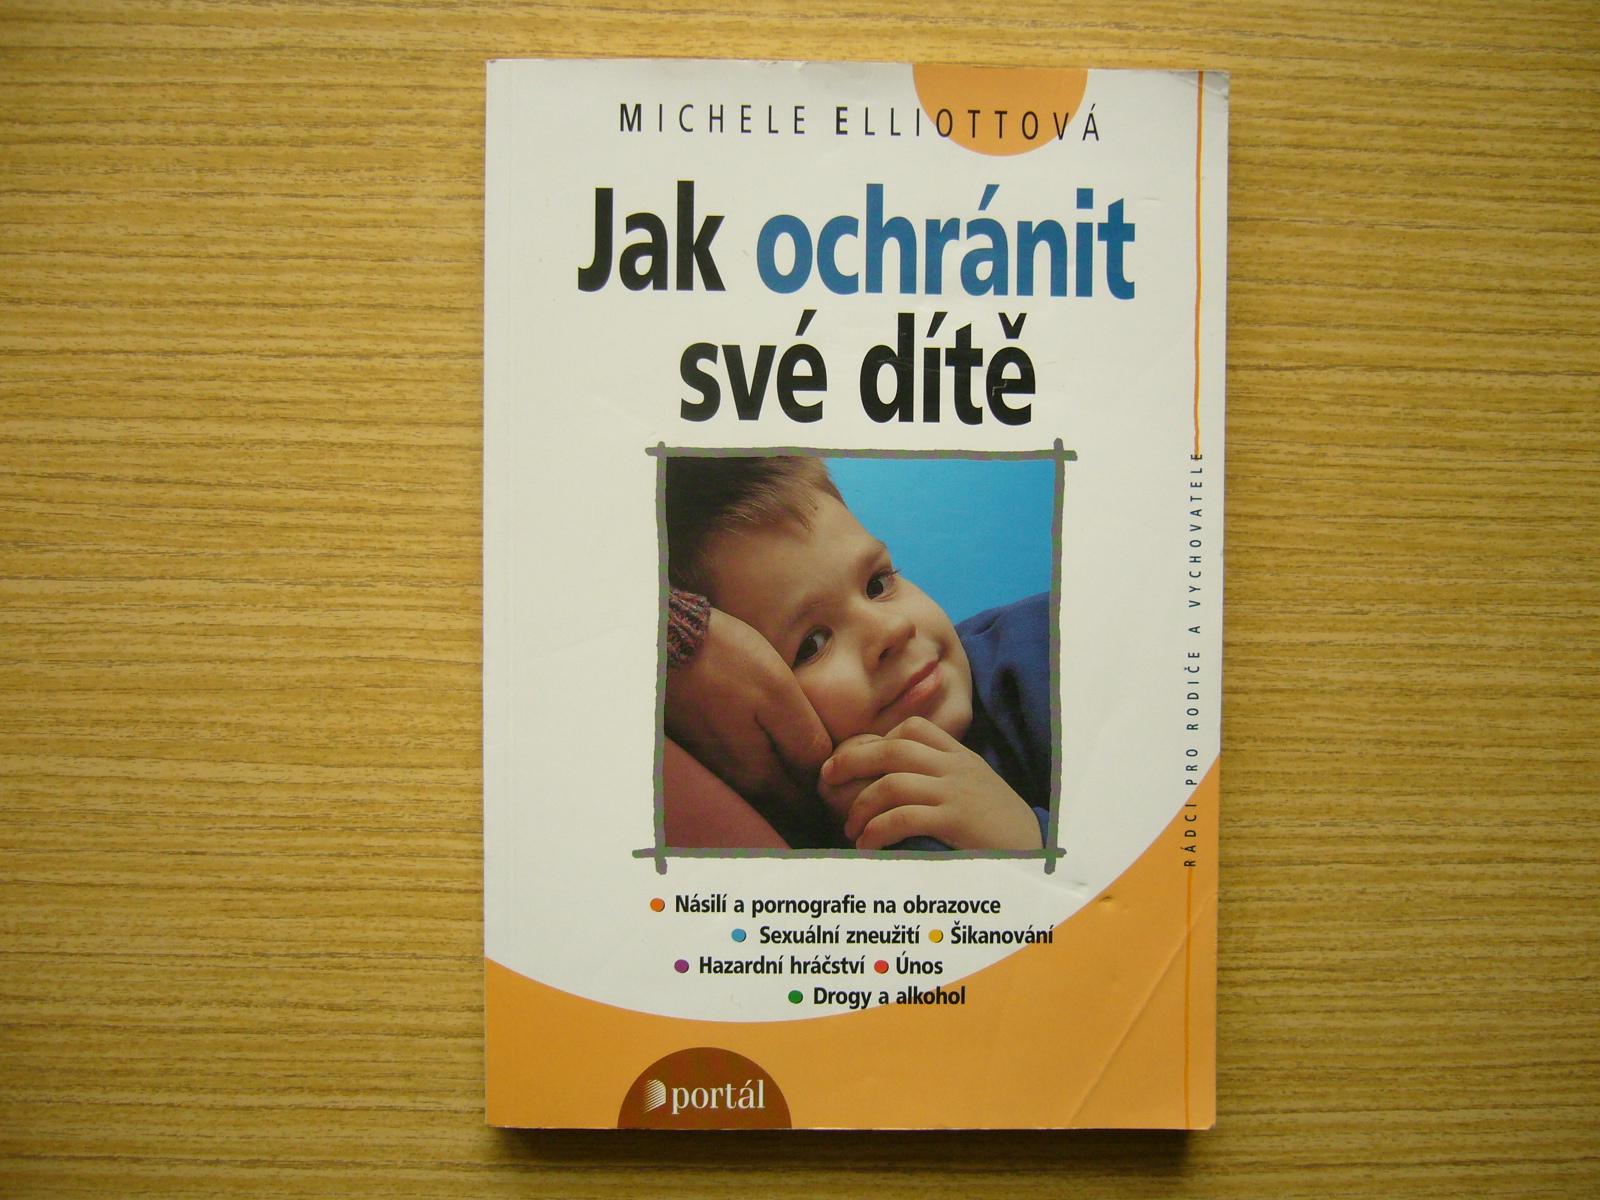 M. Elliottová - Ako ochrániť svoje dieťa | 2000 -a - Knihy